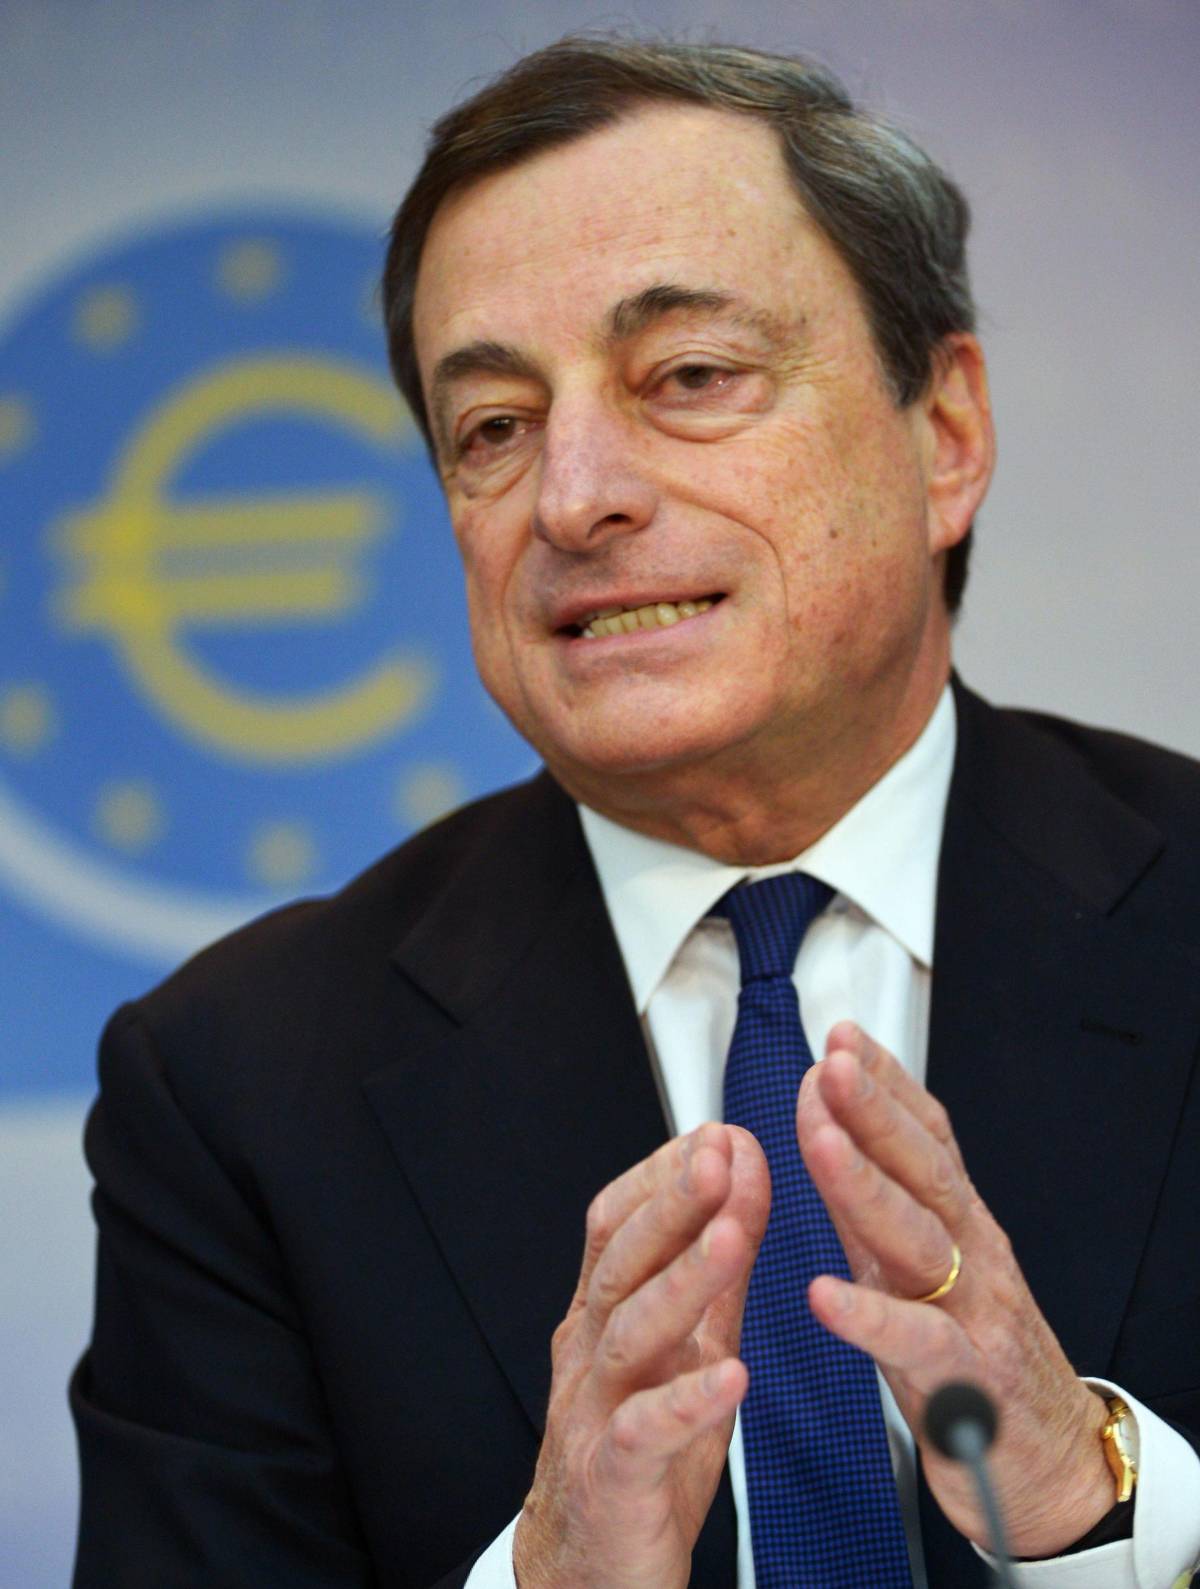 Crescono i timori di Bruxelles Draghi: "Alle elezioni europee gli antiEuro aumenteranno"